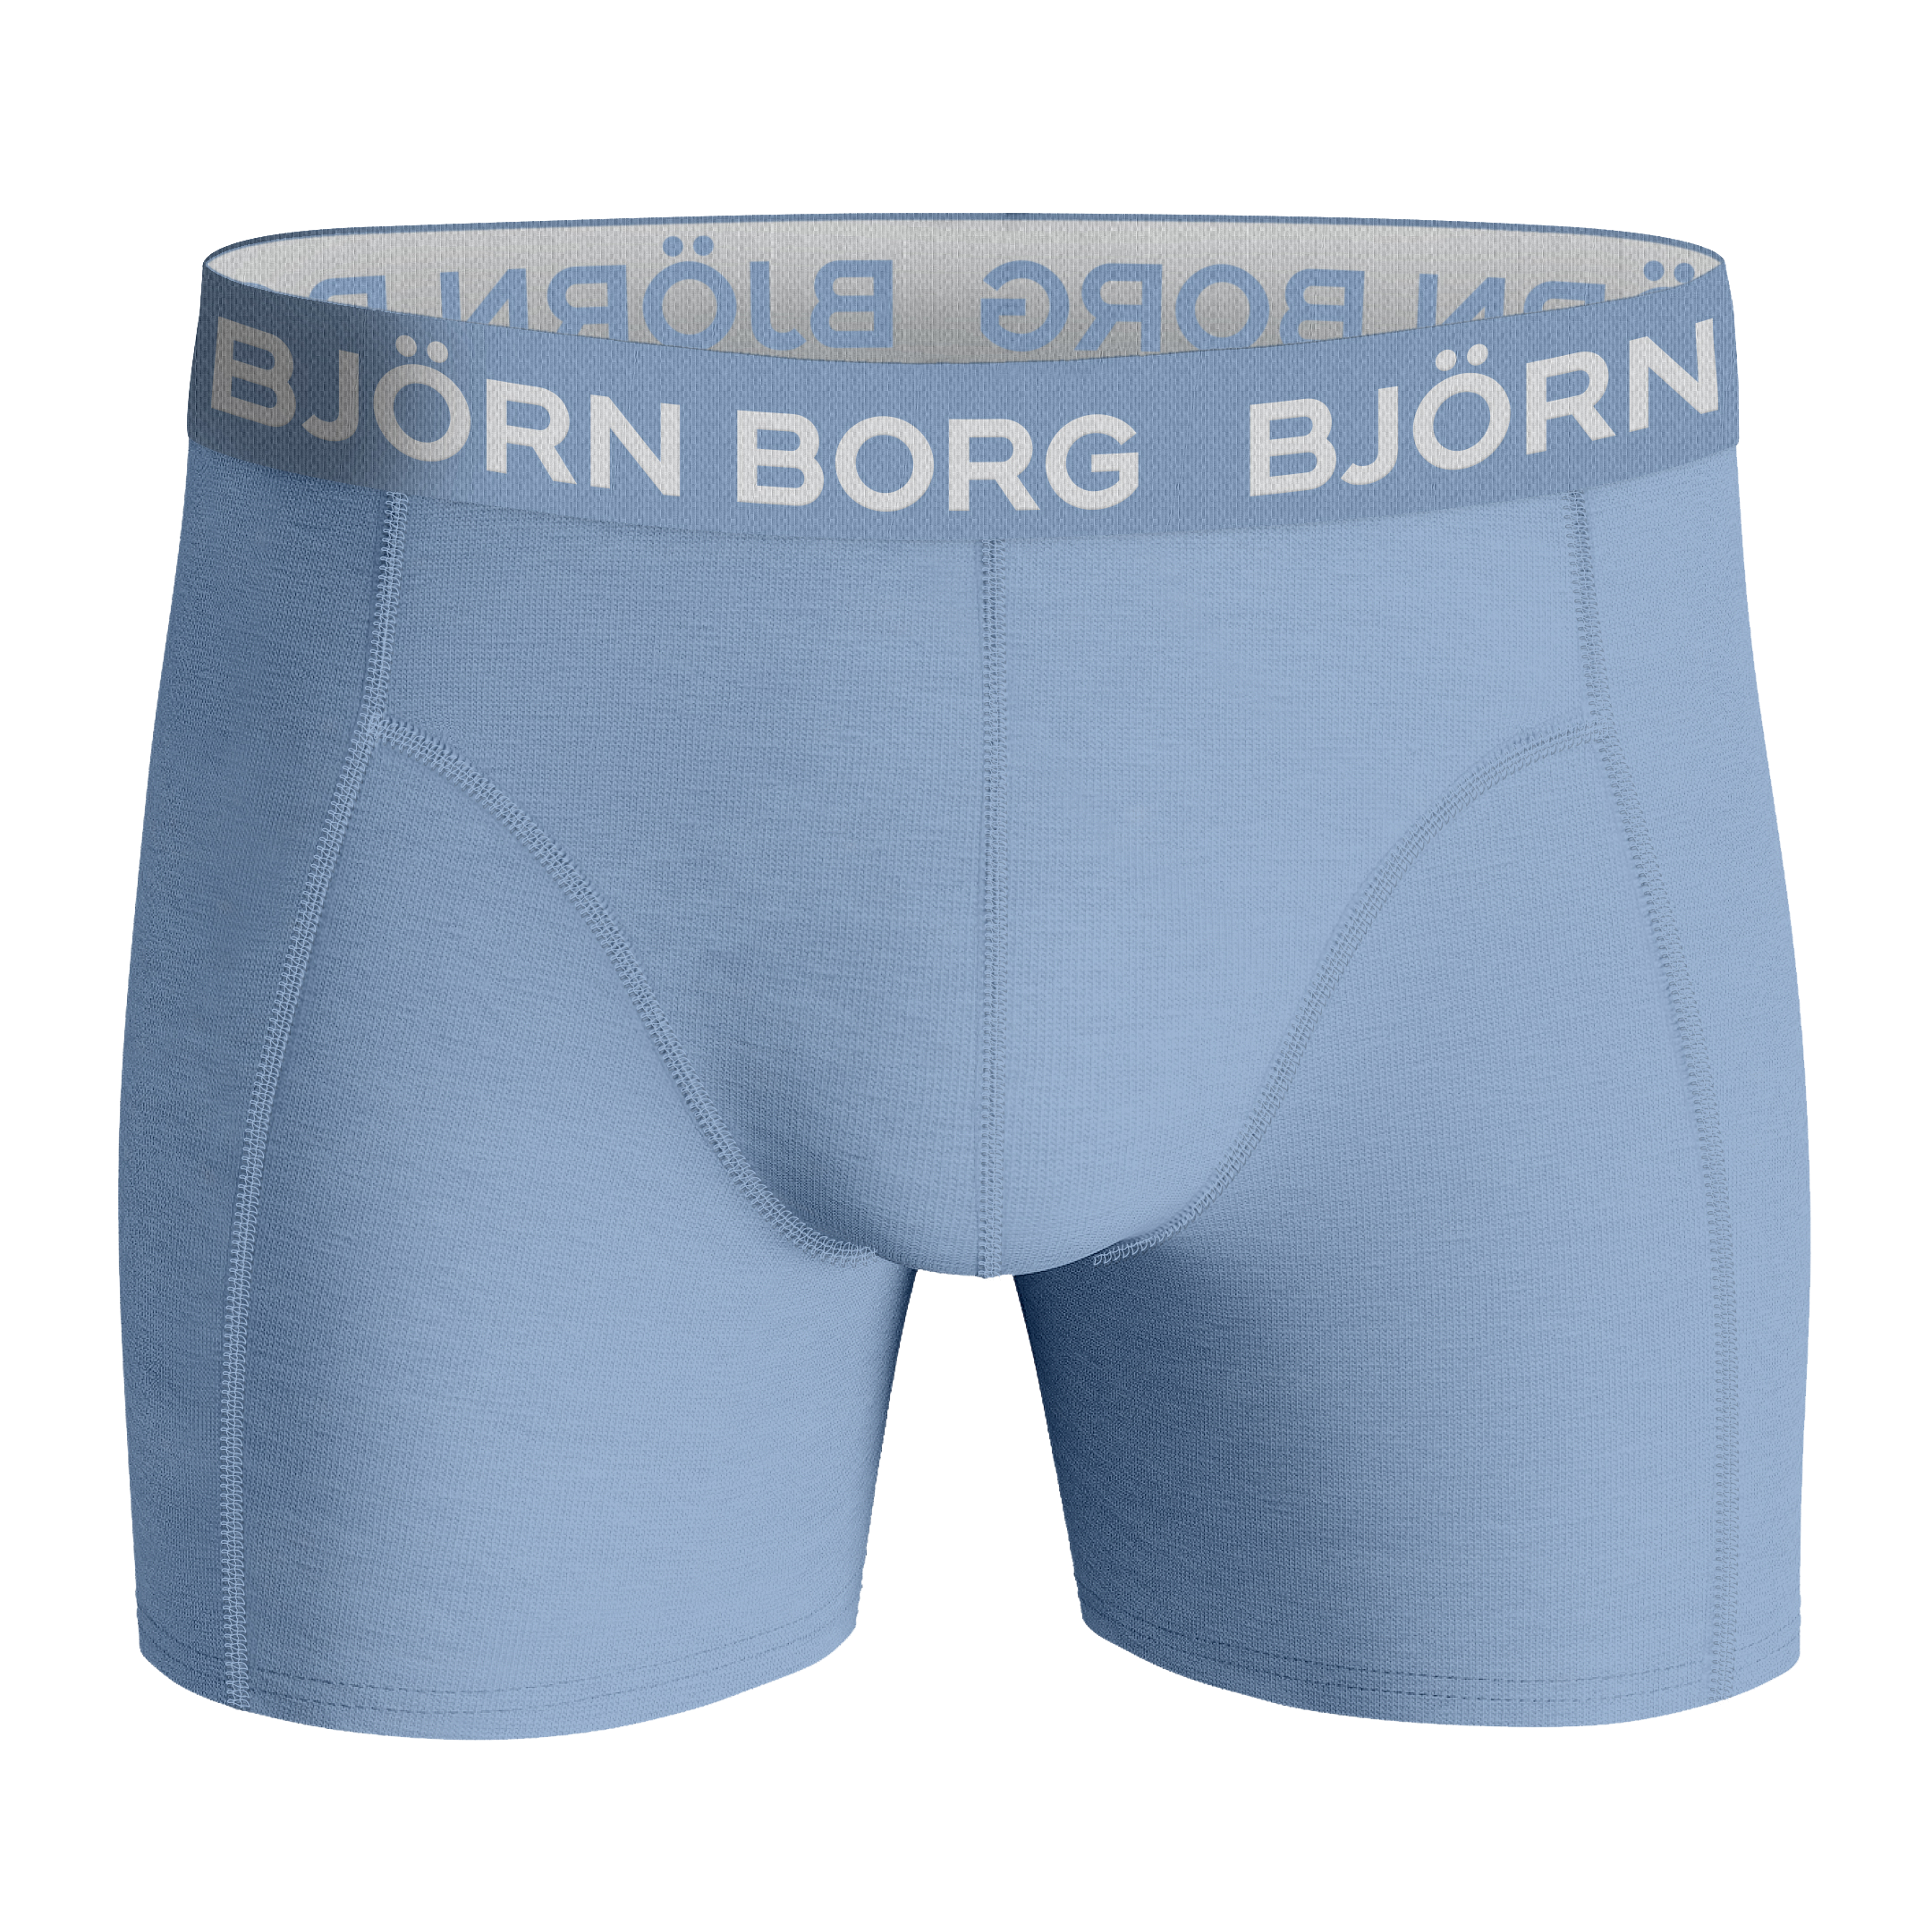 Björn Borg Herren Essential Boxer 5P Boxer Short schwarz 5er Pack NEU 